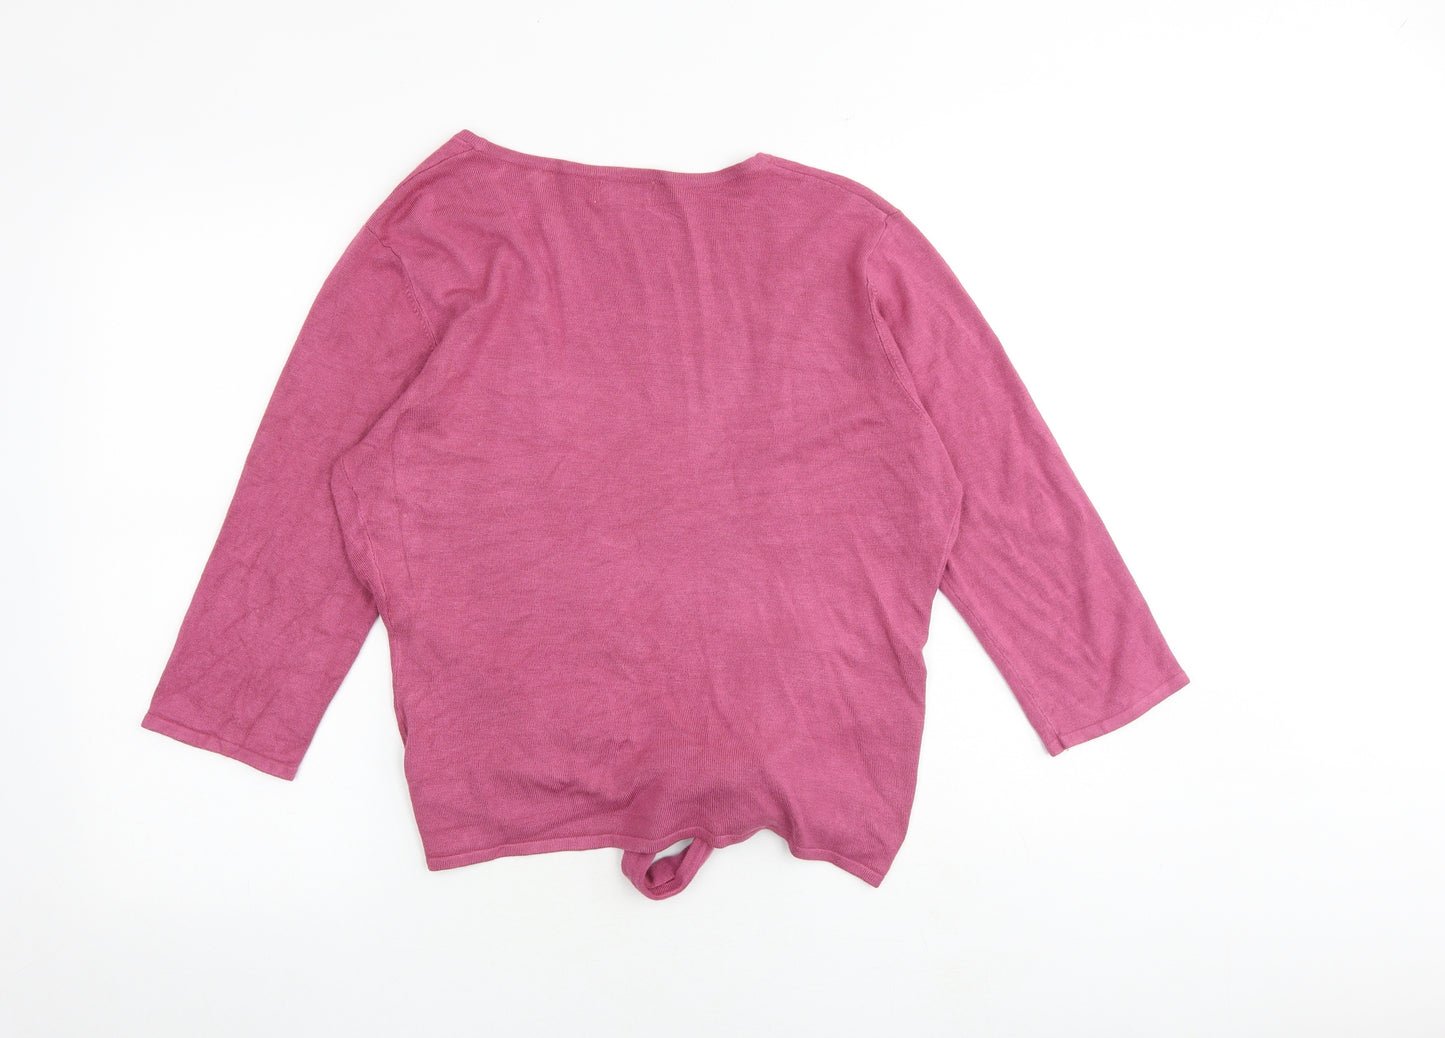 Kaliko Womens Pink V-Neck Viscose Cardigan Jumper Size 12 - Tie Front